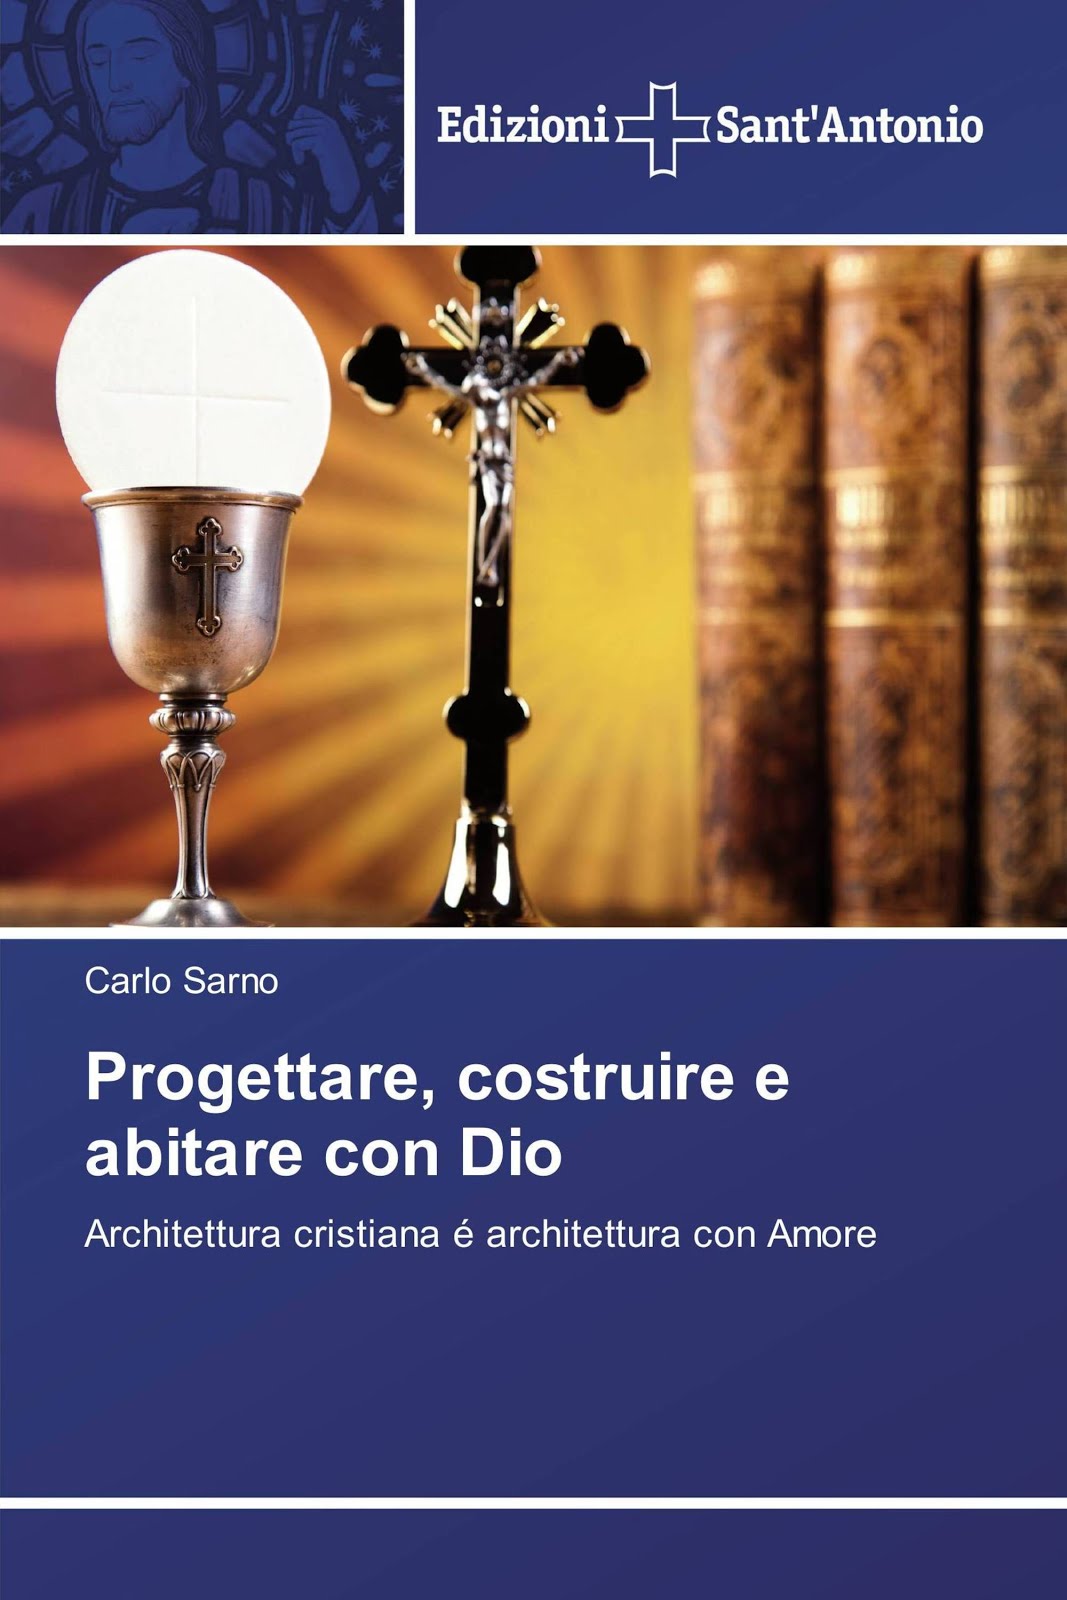 Carlo Sarno - Progettare, costruire e abitare con Dio